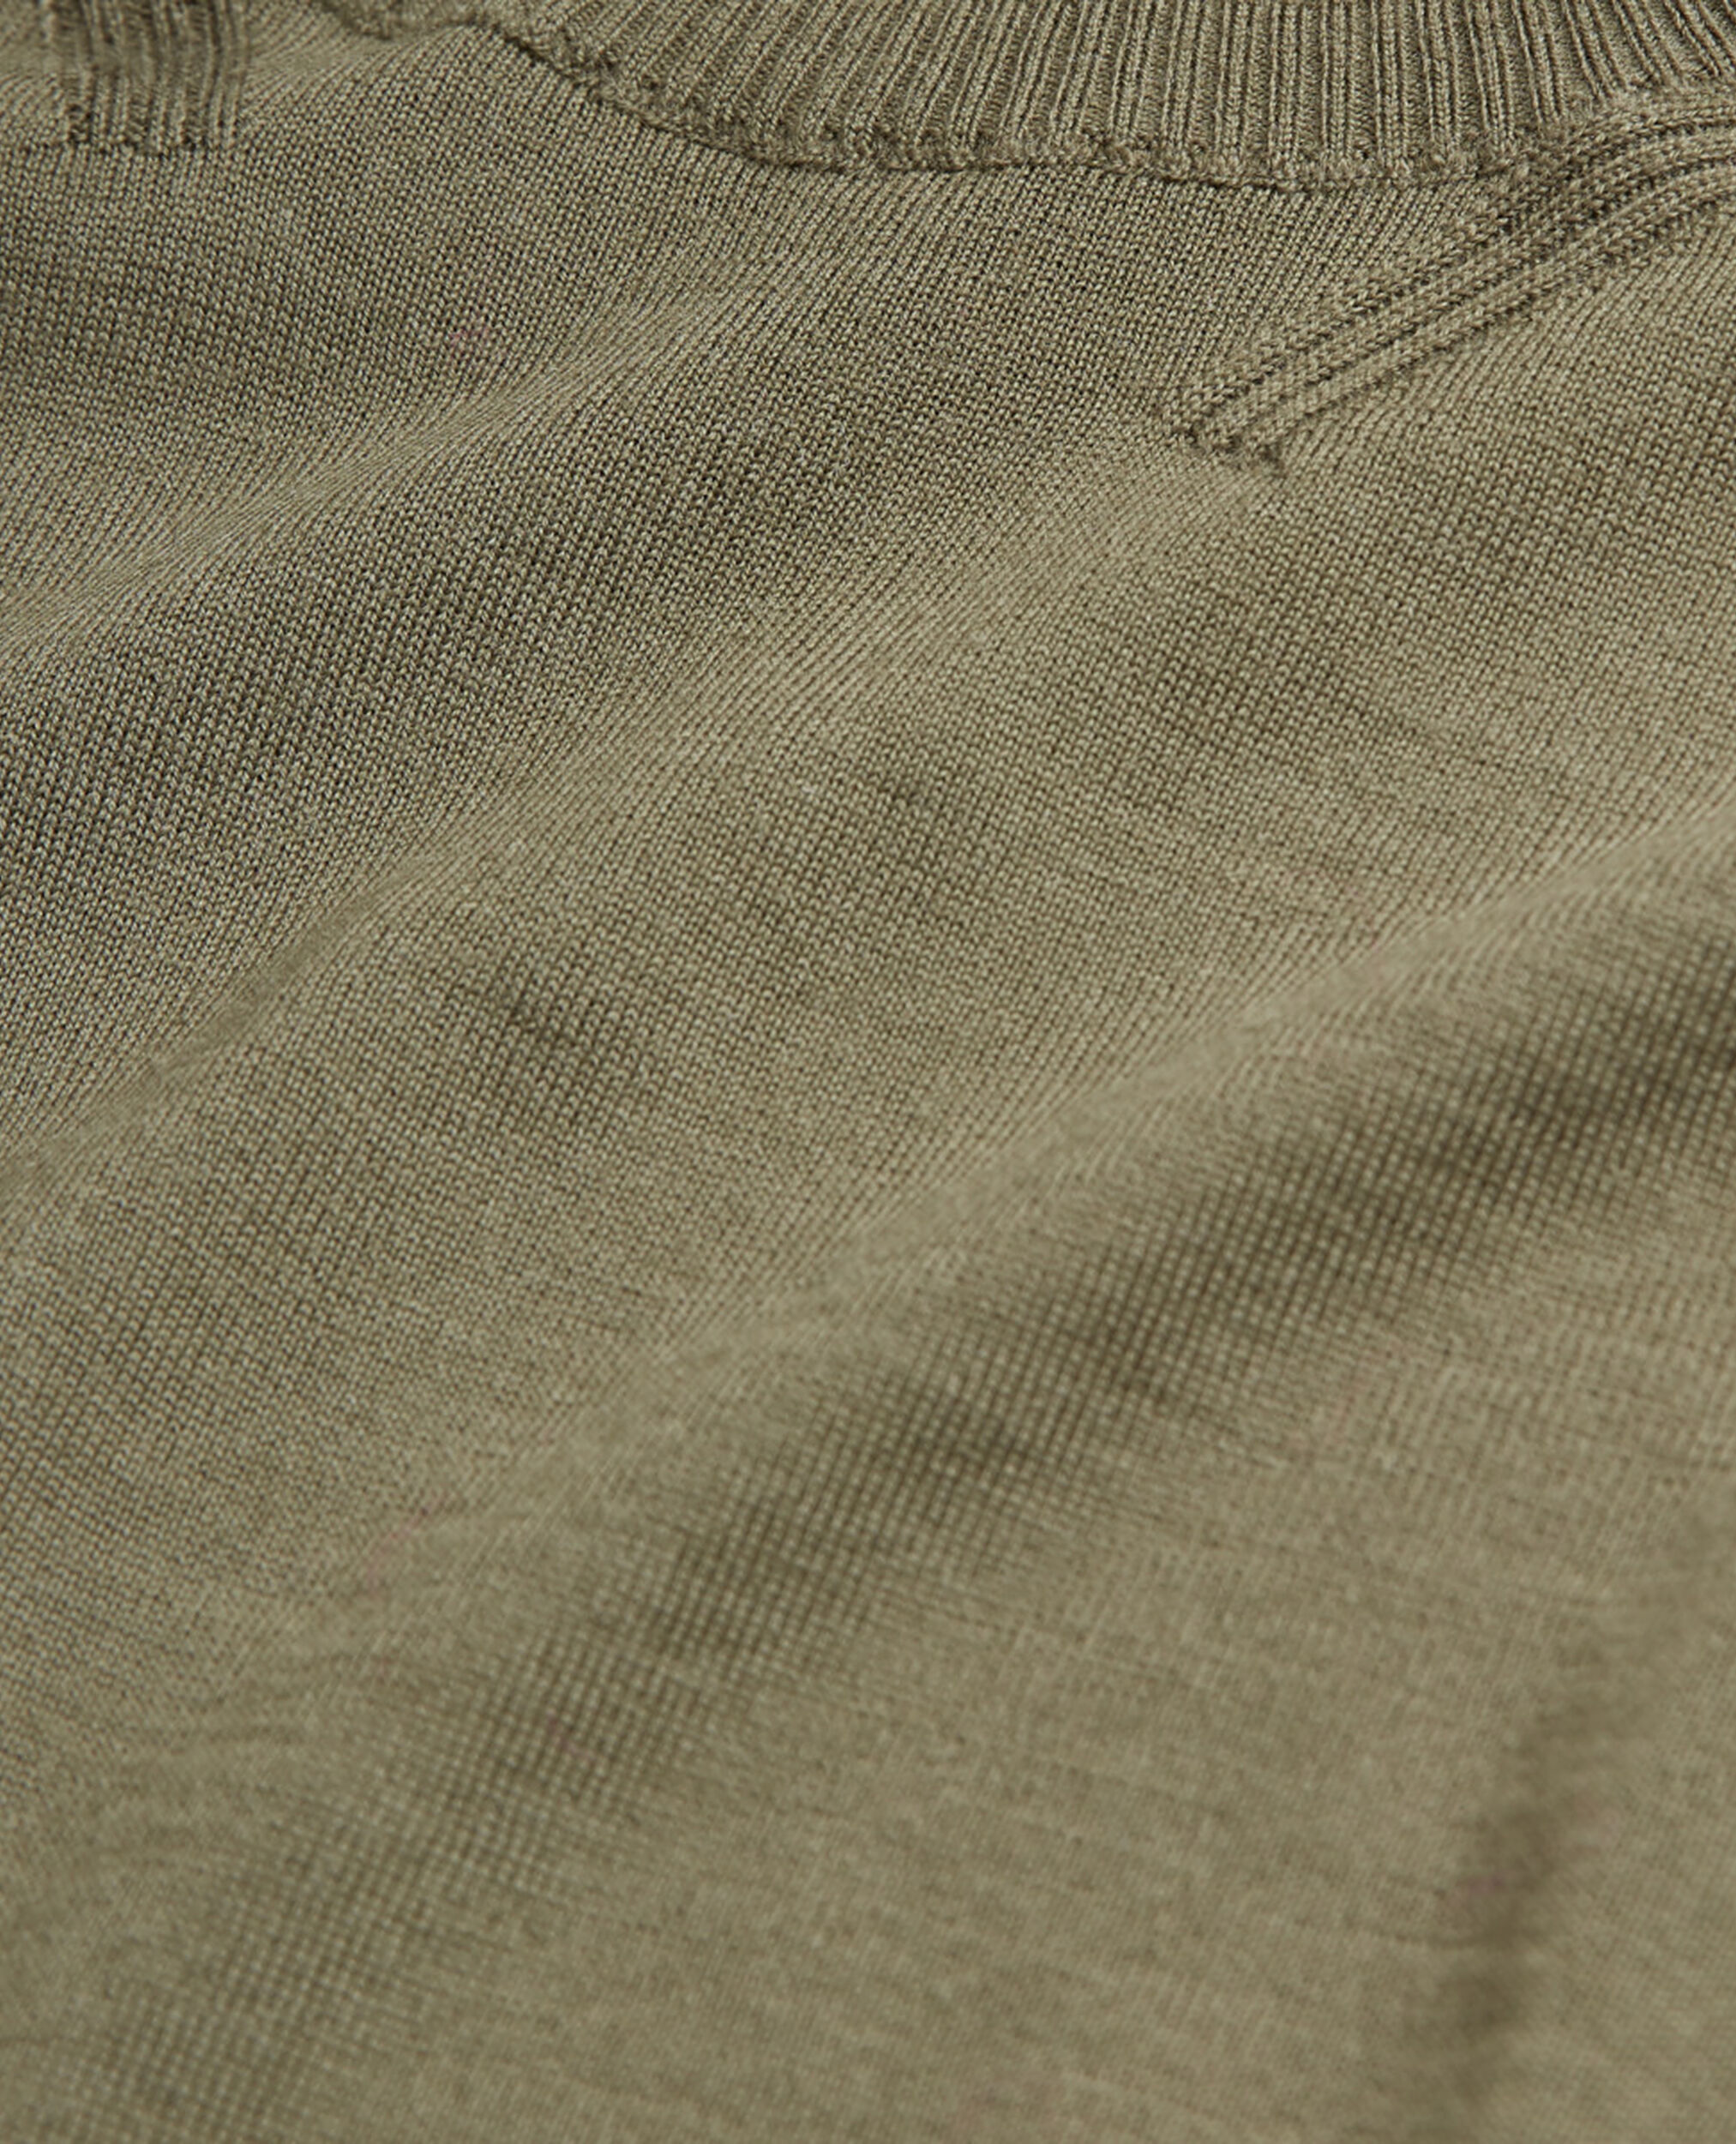 Khaki merino sweater, ALGUE, hi-res image number null